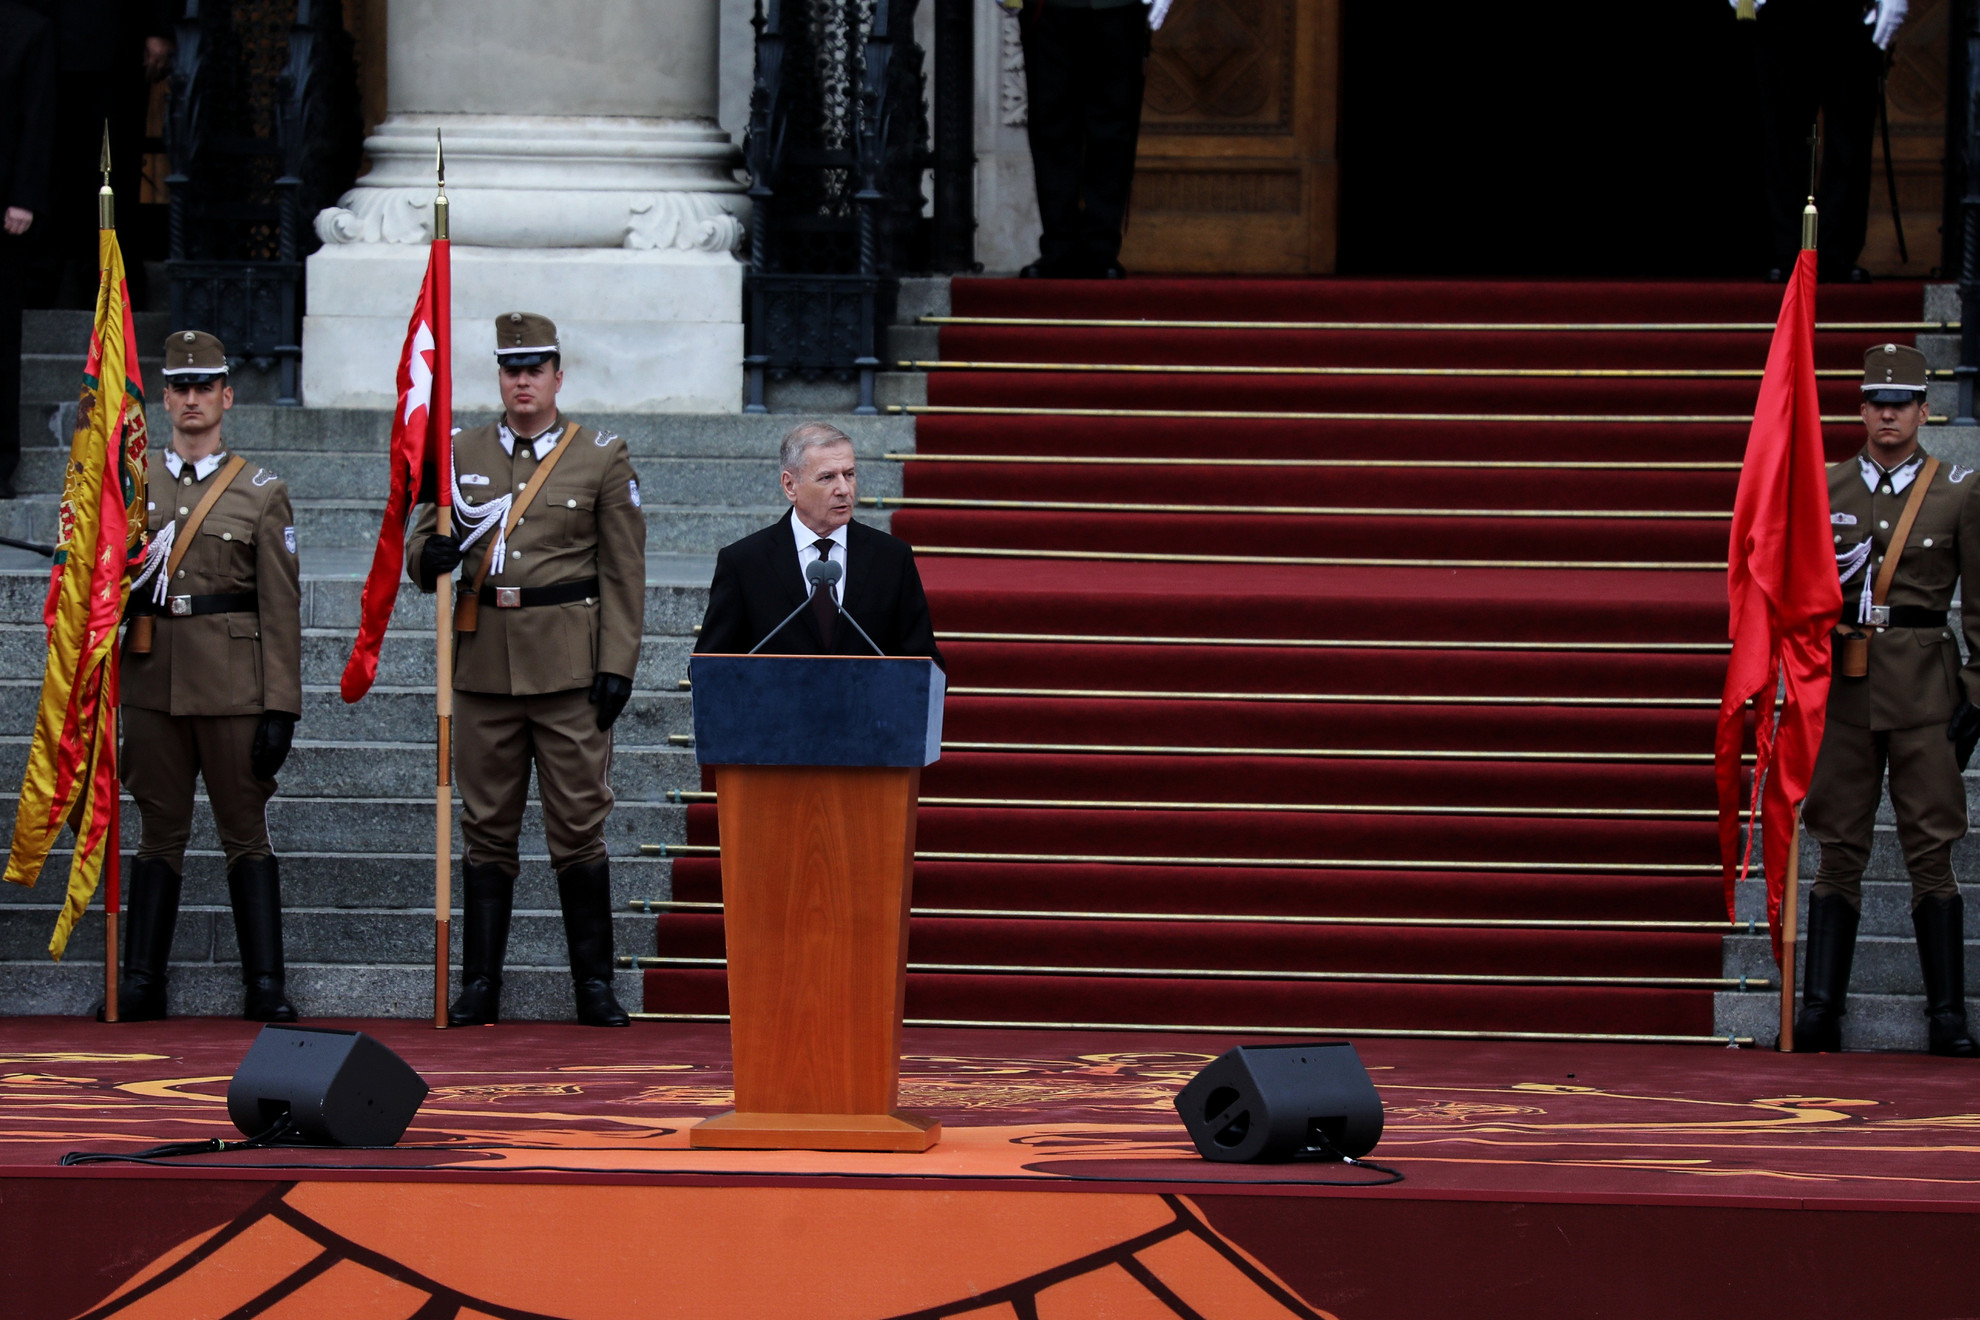 Benkő Tibor honvédelmi miniszter beszédet mond a Szent István-napi állami ünnepségen tartott tisztavatáson a budapesti Kossuth téren 2021. augusztus 20-án